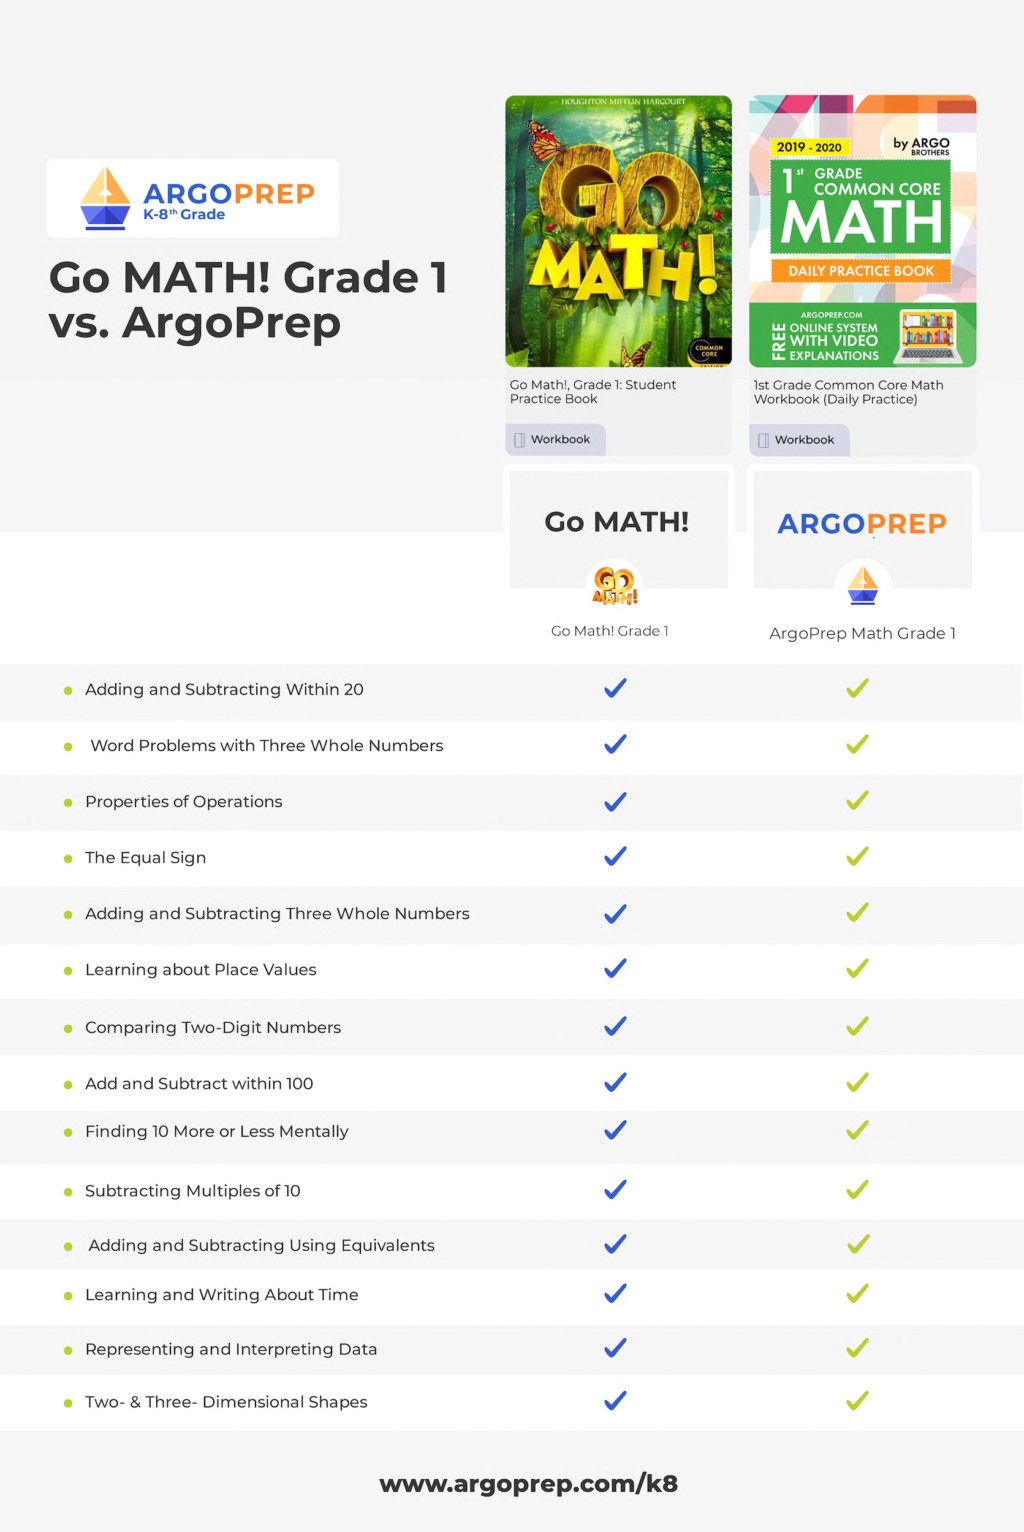 Go Math vs. ArgoPrep